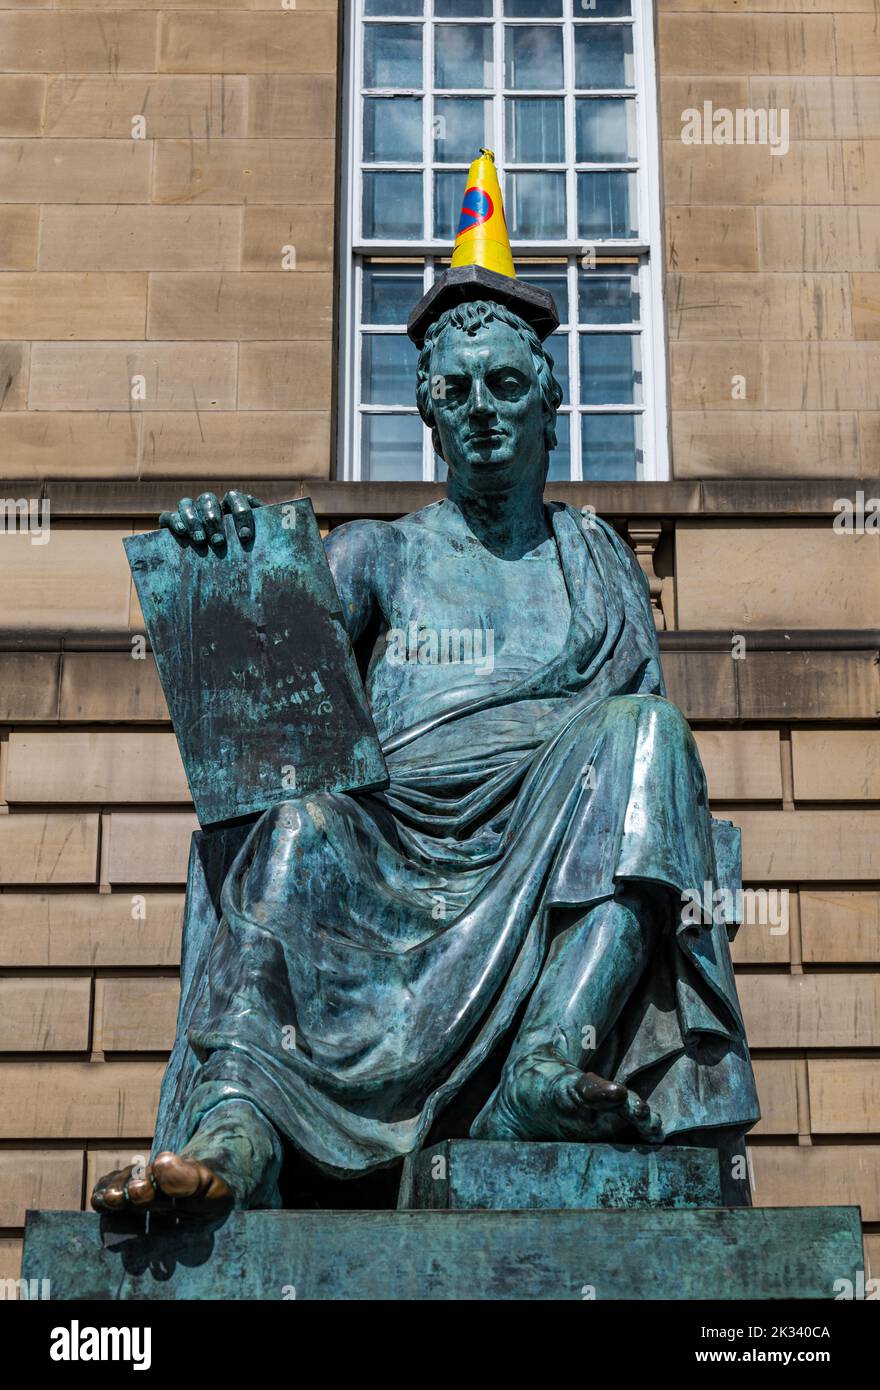 Estatua de bronce de David Hume con pie frotado y cono de tráfico en la cabeza, Royal Mile, Edimburgo, Escocia, Reino Unido Foto de stock